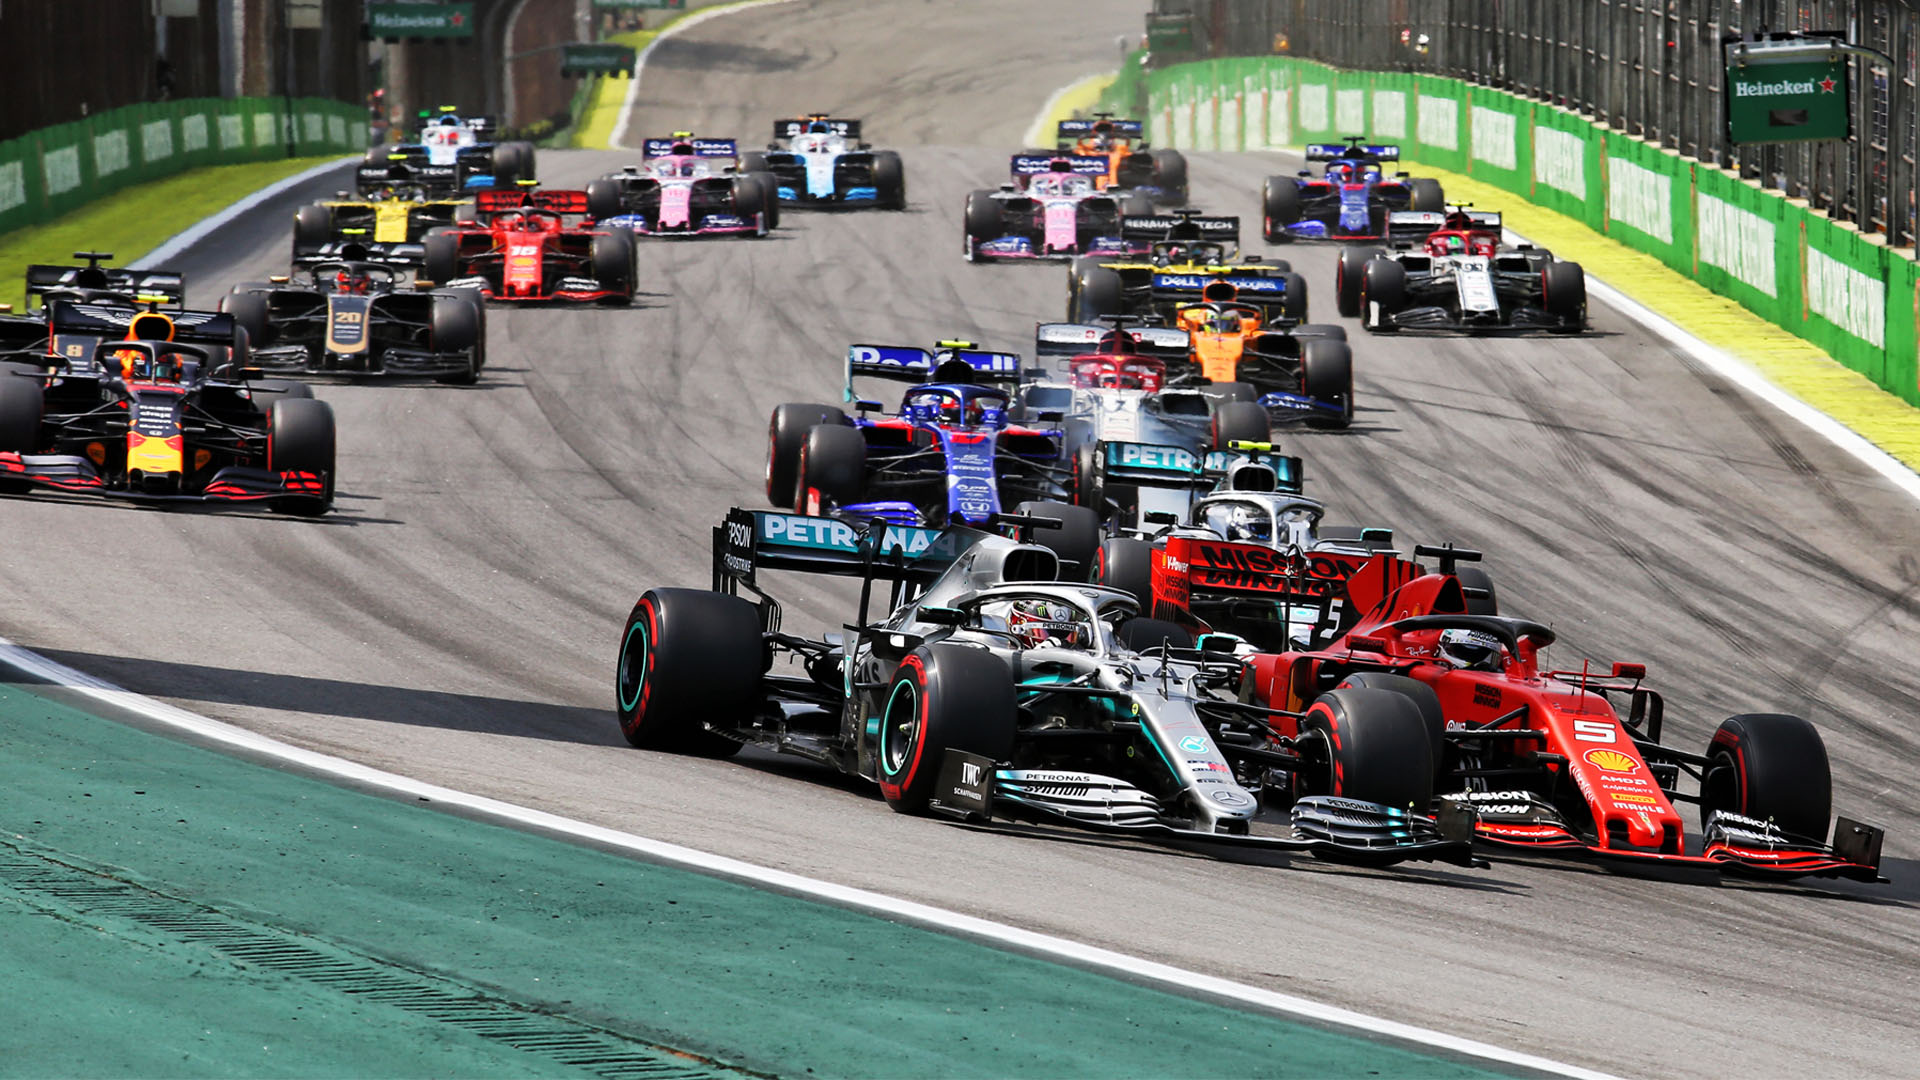 Formula 1 heyecanı Macaristan'da sürecek